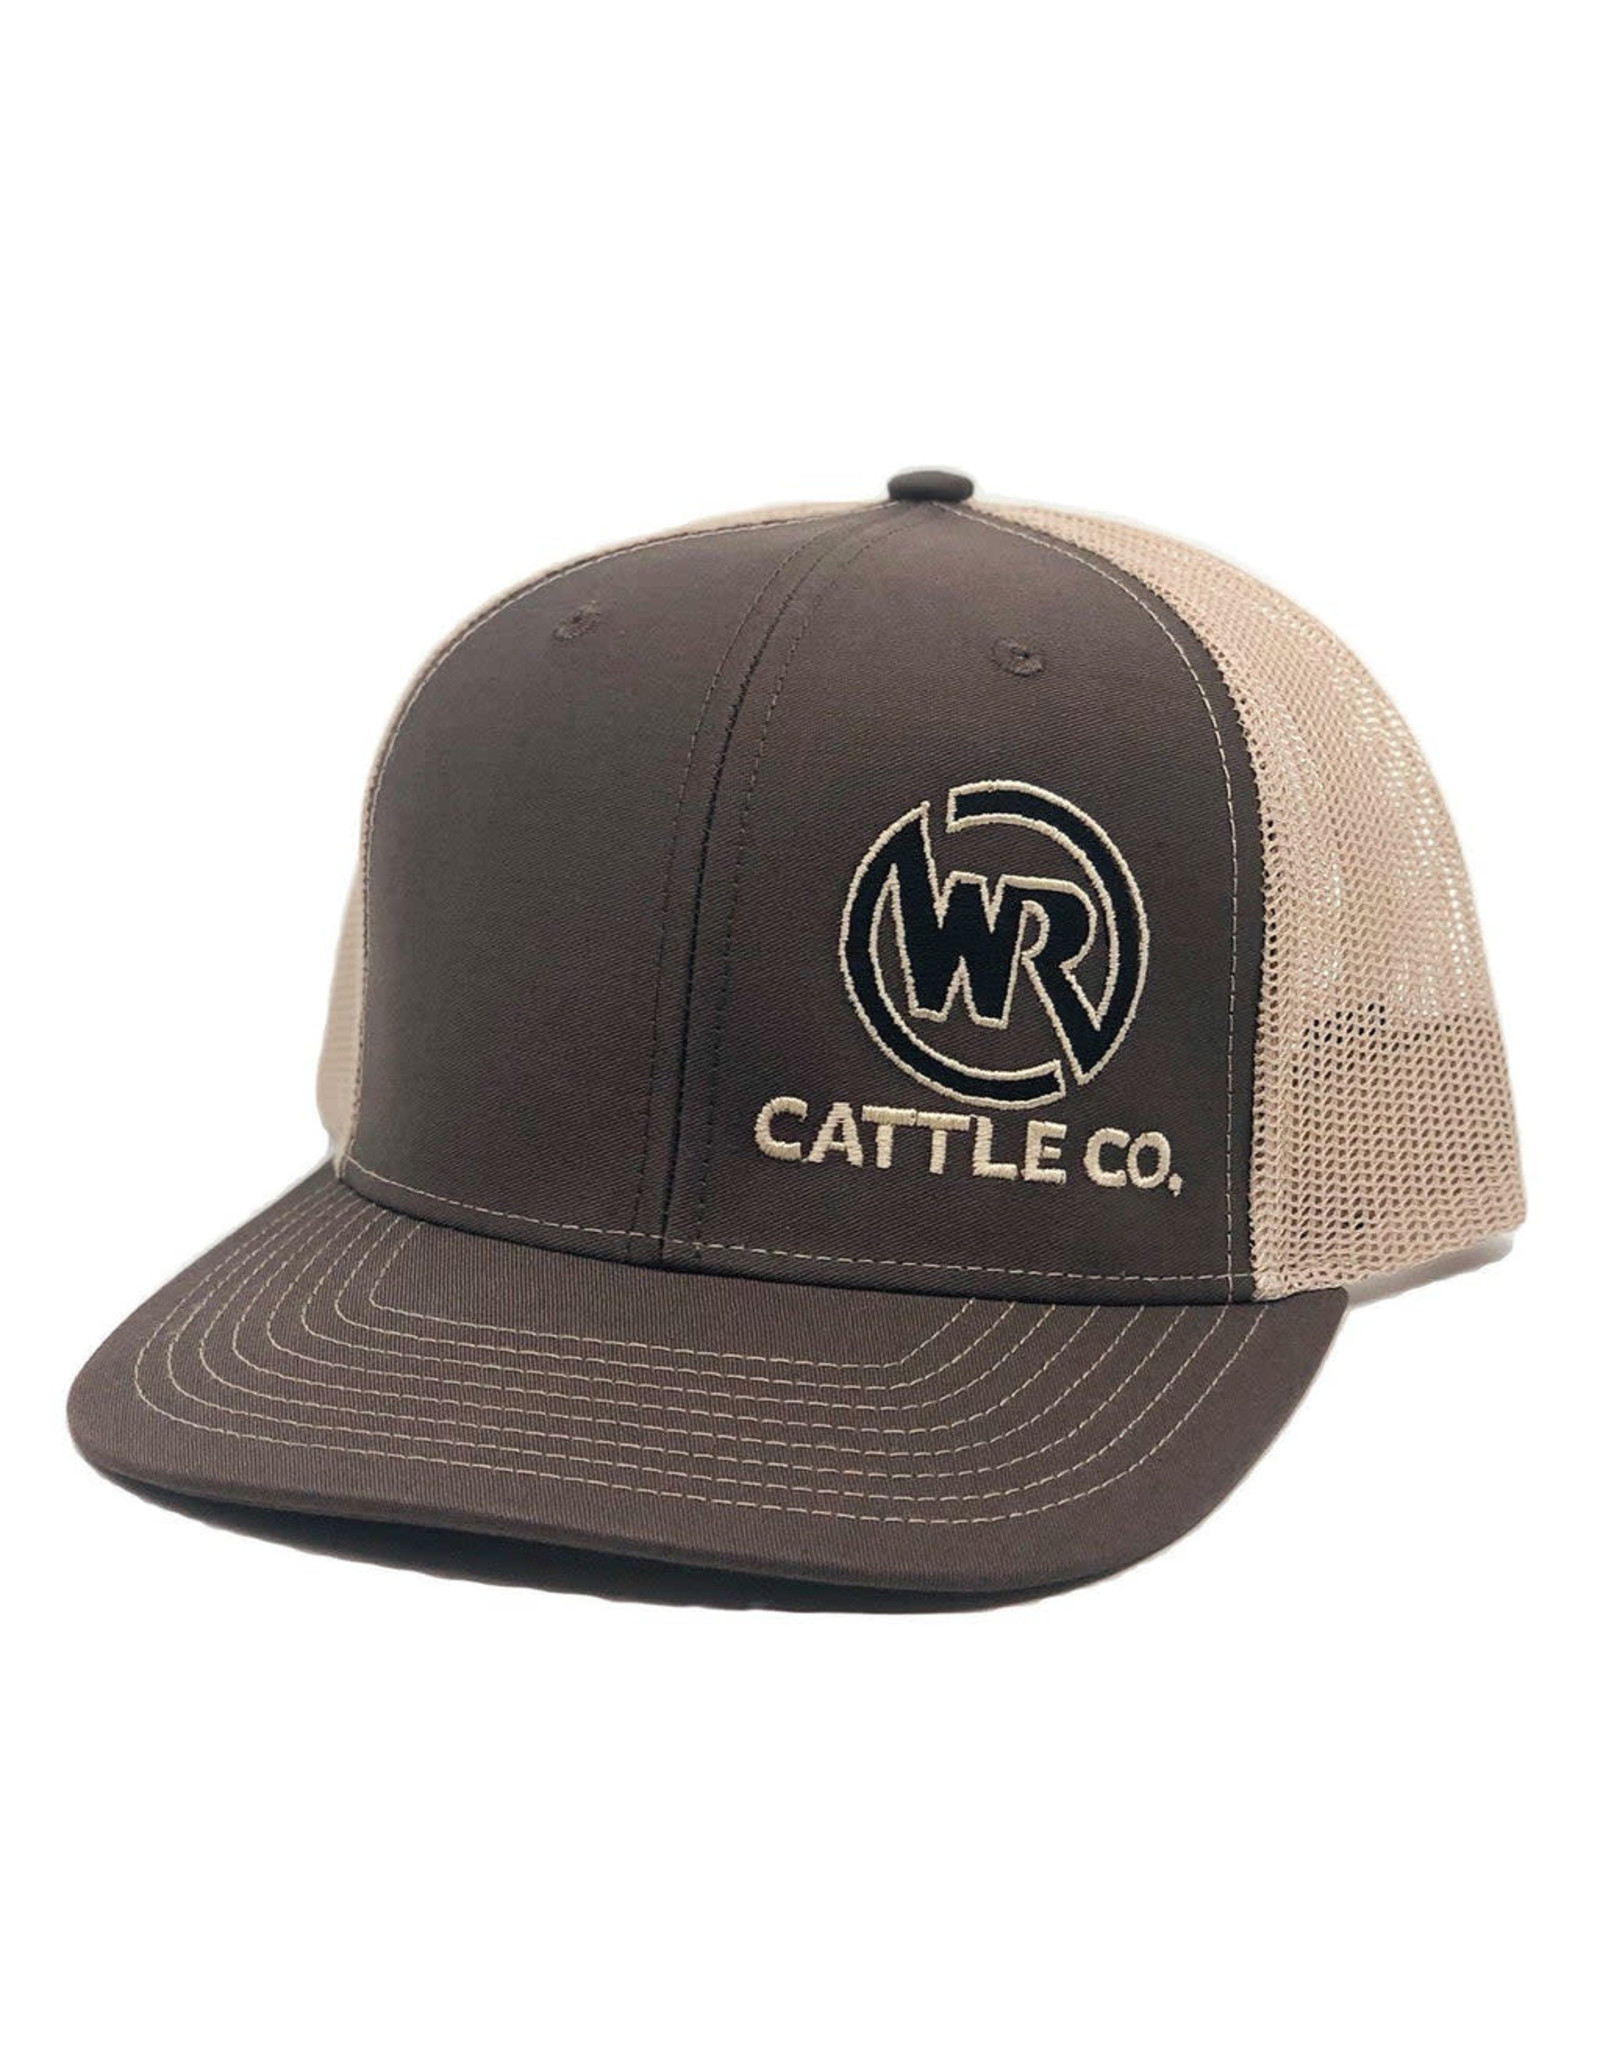 Whiskey Bent Hat Co. Whiskey Bent Hat Co. Whiskey Ranch 112 Brown Trucker Cap